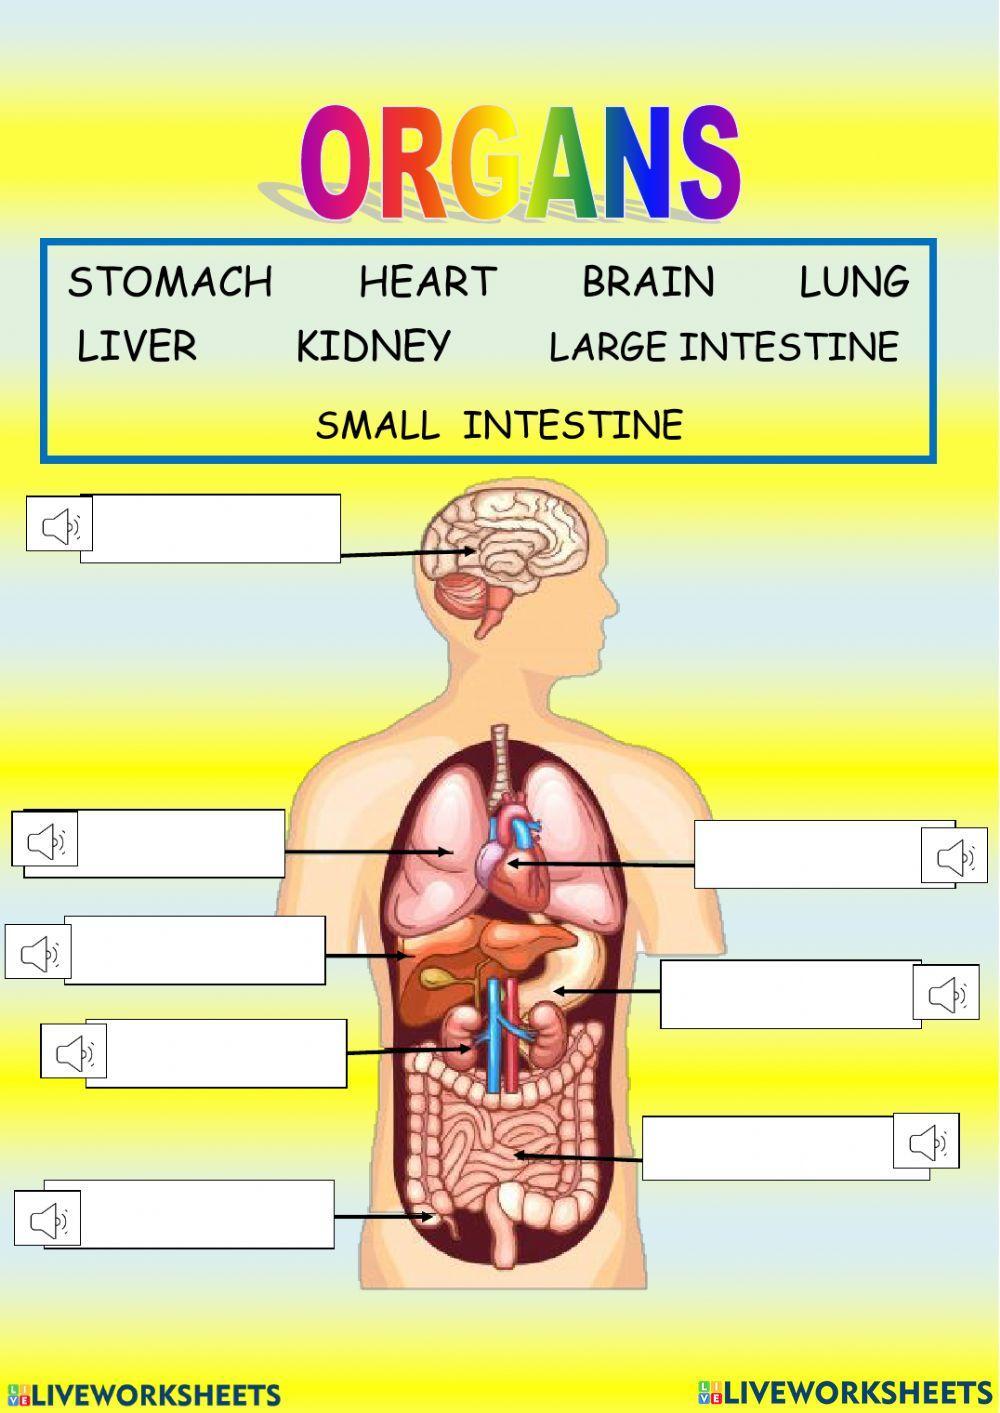 Body organs